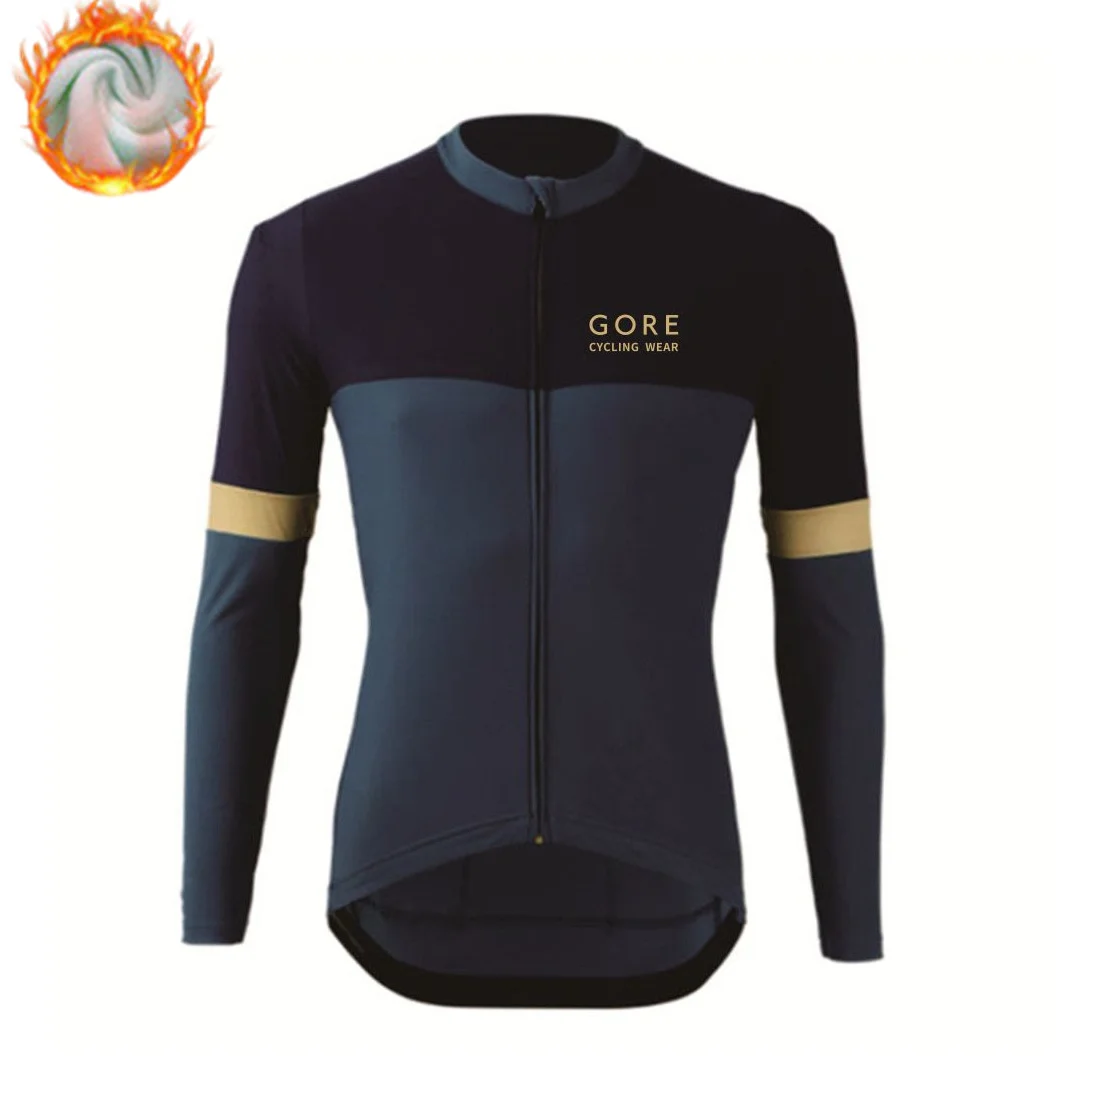 

Зимняя велосипедная Джерси, Мужская термальная флисовая велосипедная одежда, одежда для велоспорта, кашемировая велосипедная куртка с длинным рукавом, теплая одежда для горного велосипеда